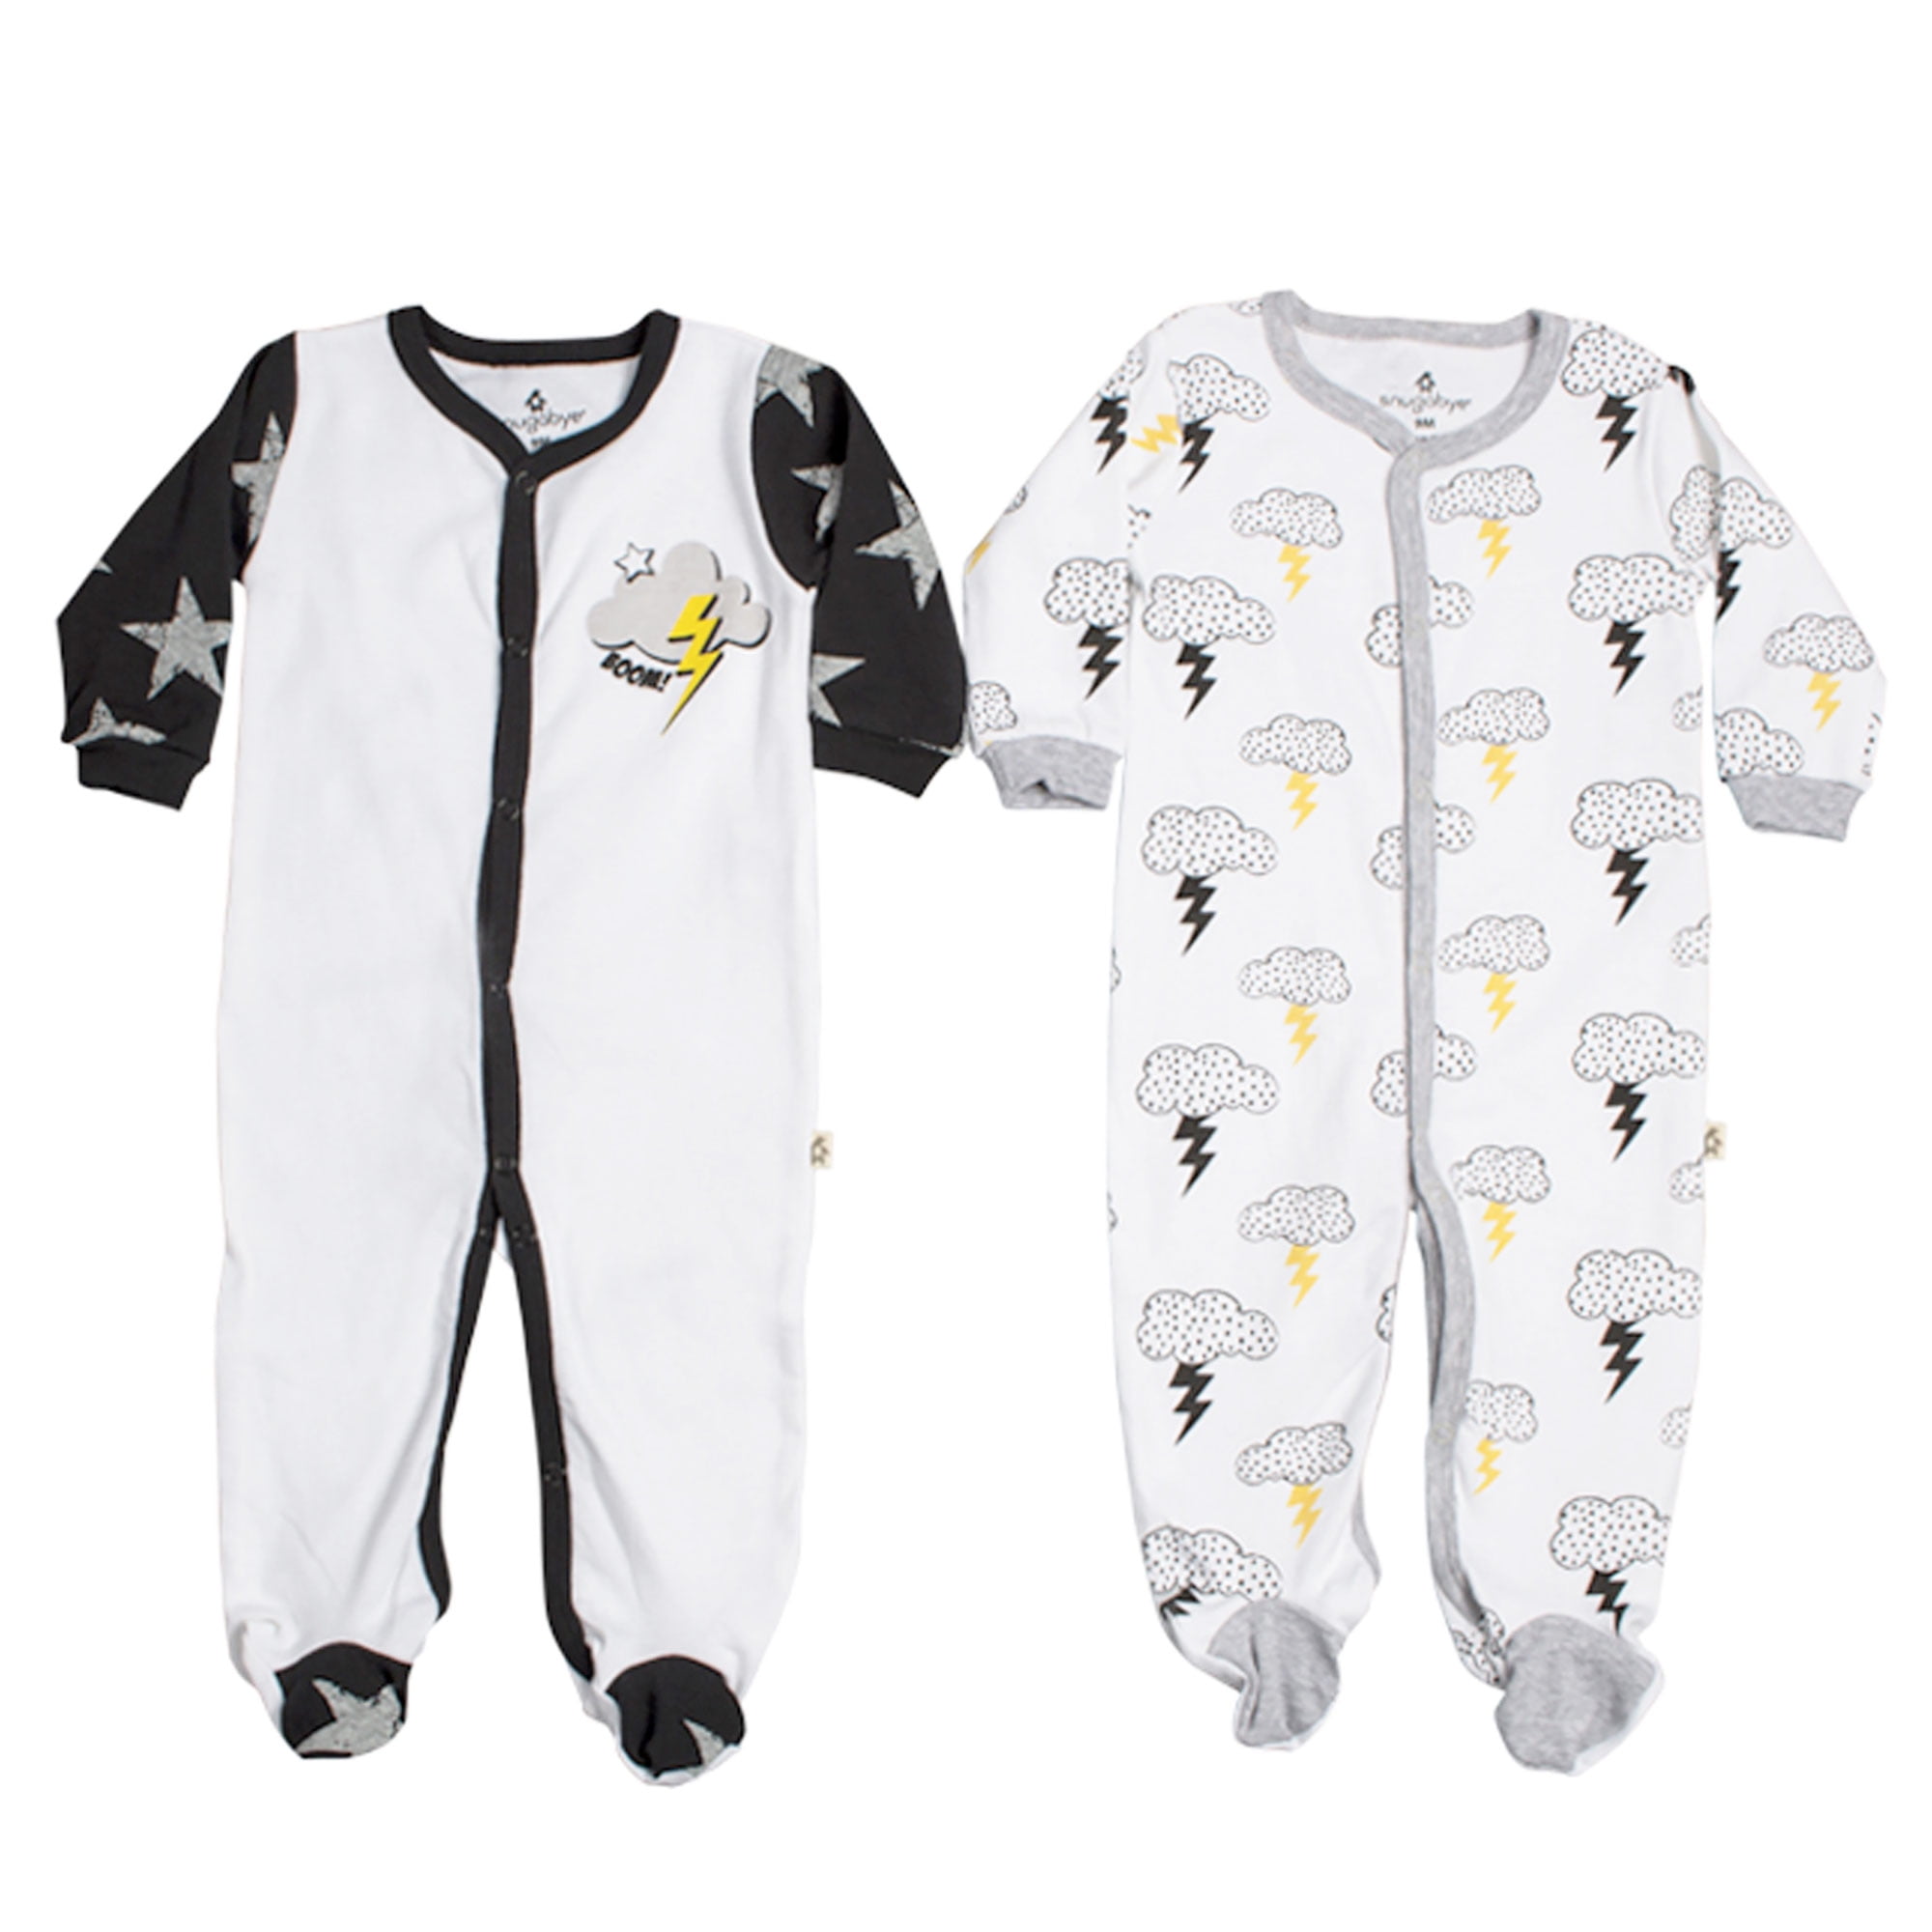 Snugabye Baby Layette 2 Pack Footie Boys Footed Sleeper Pajamas Black ...